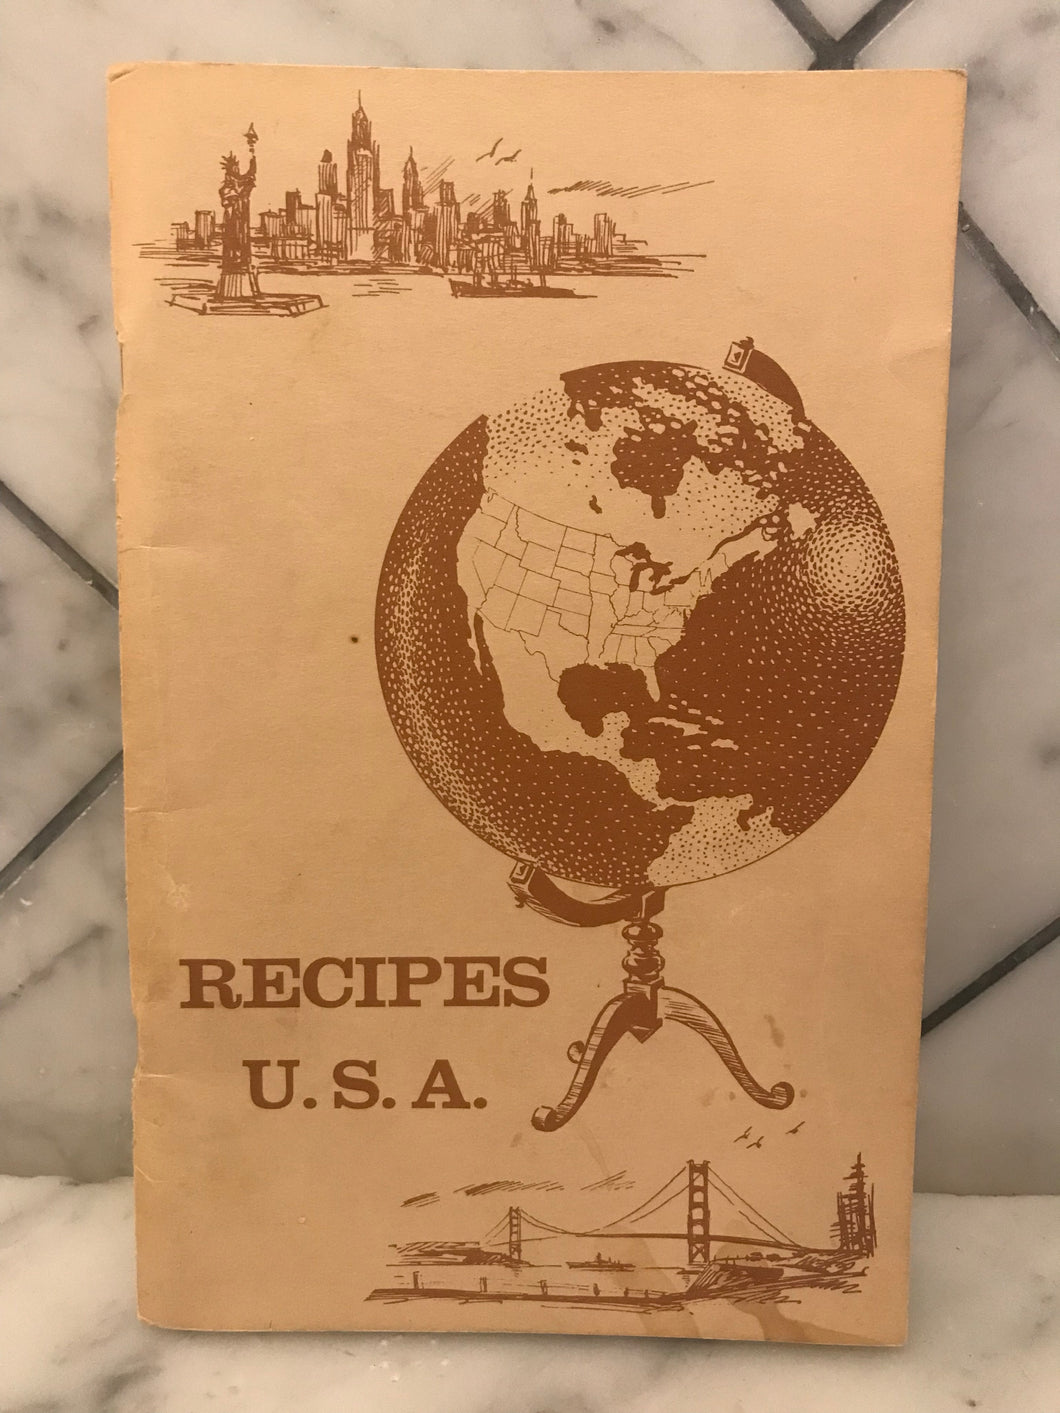 Recipes U.S.A.